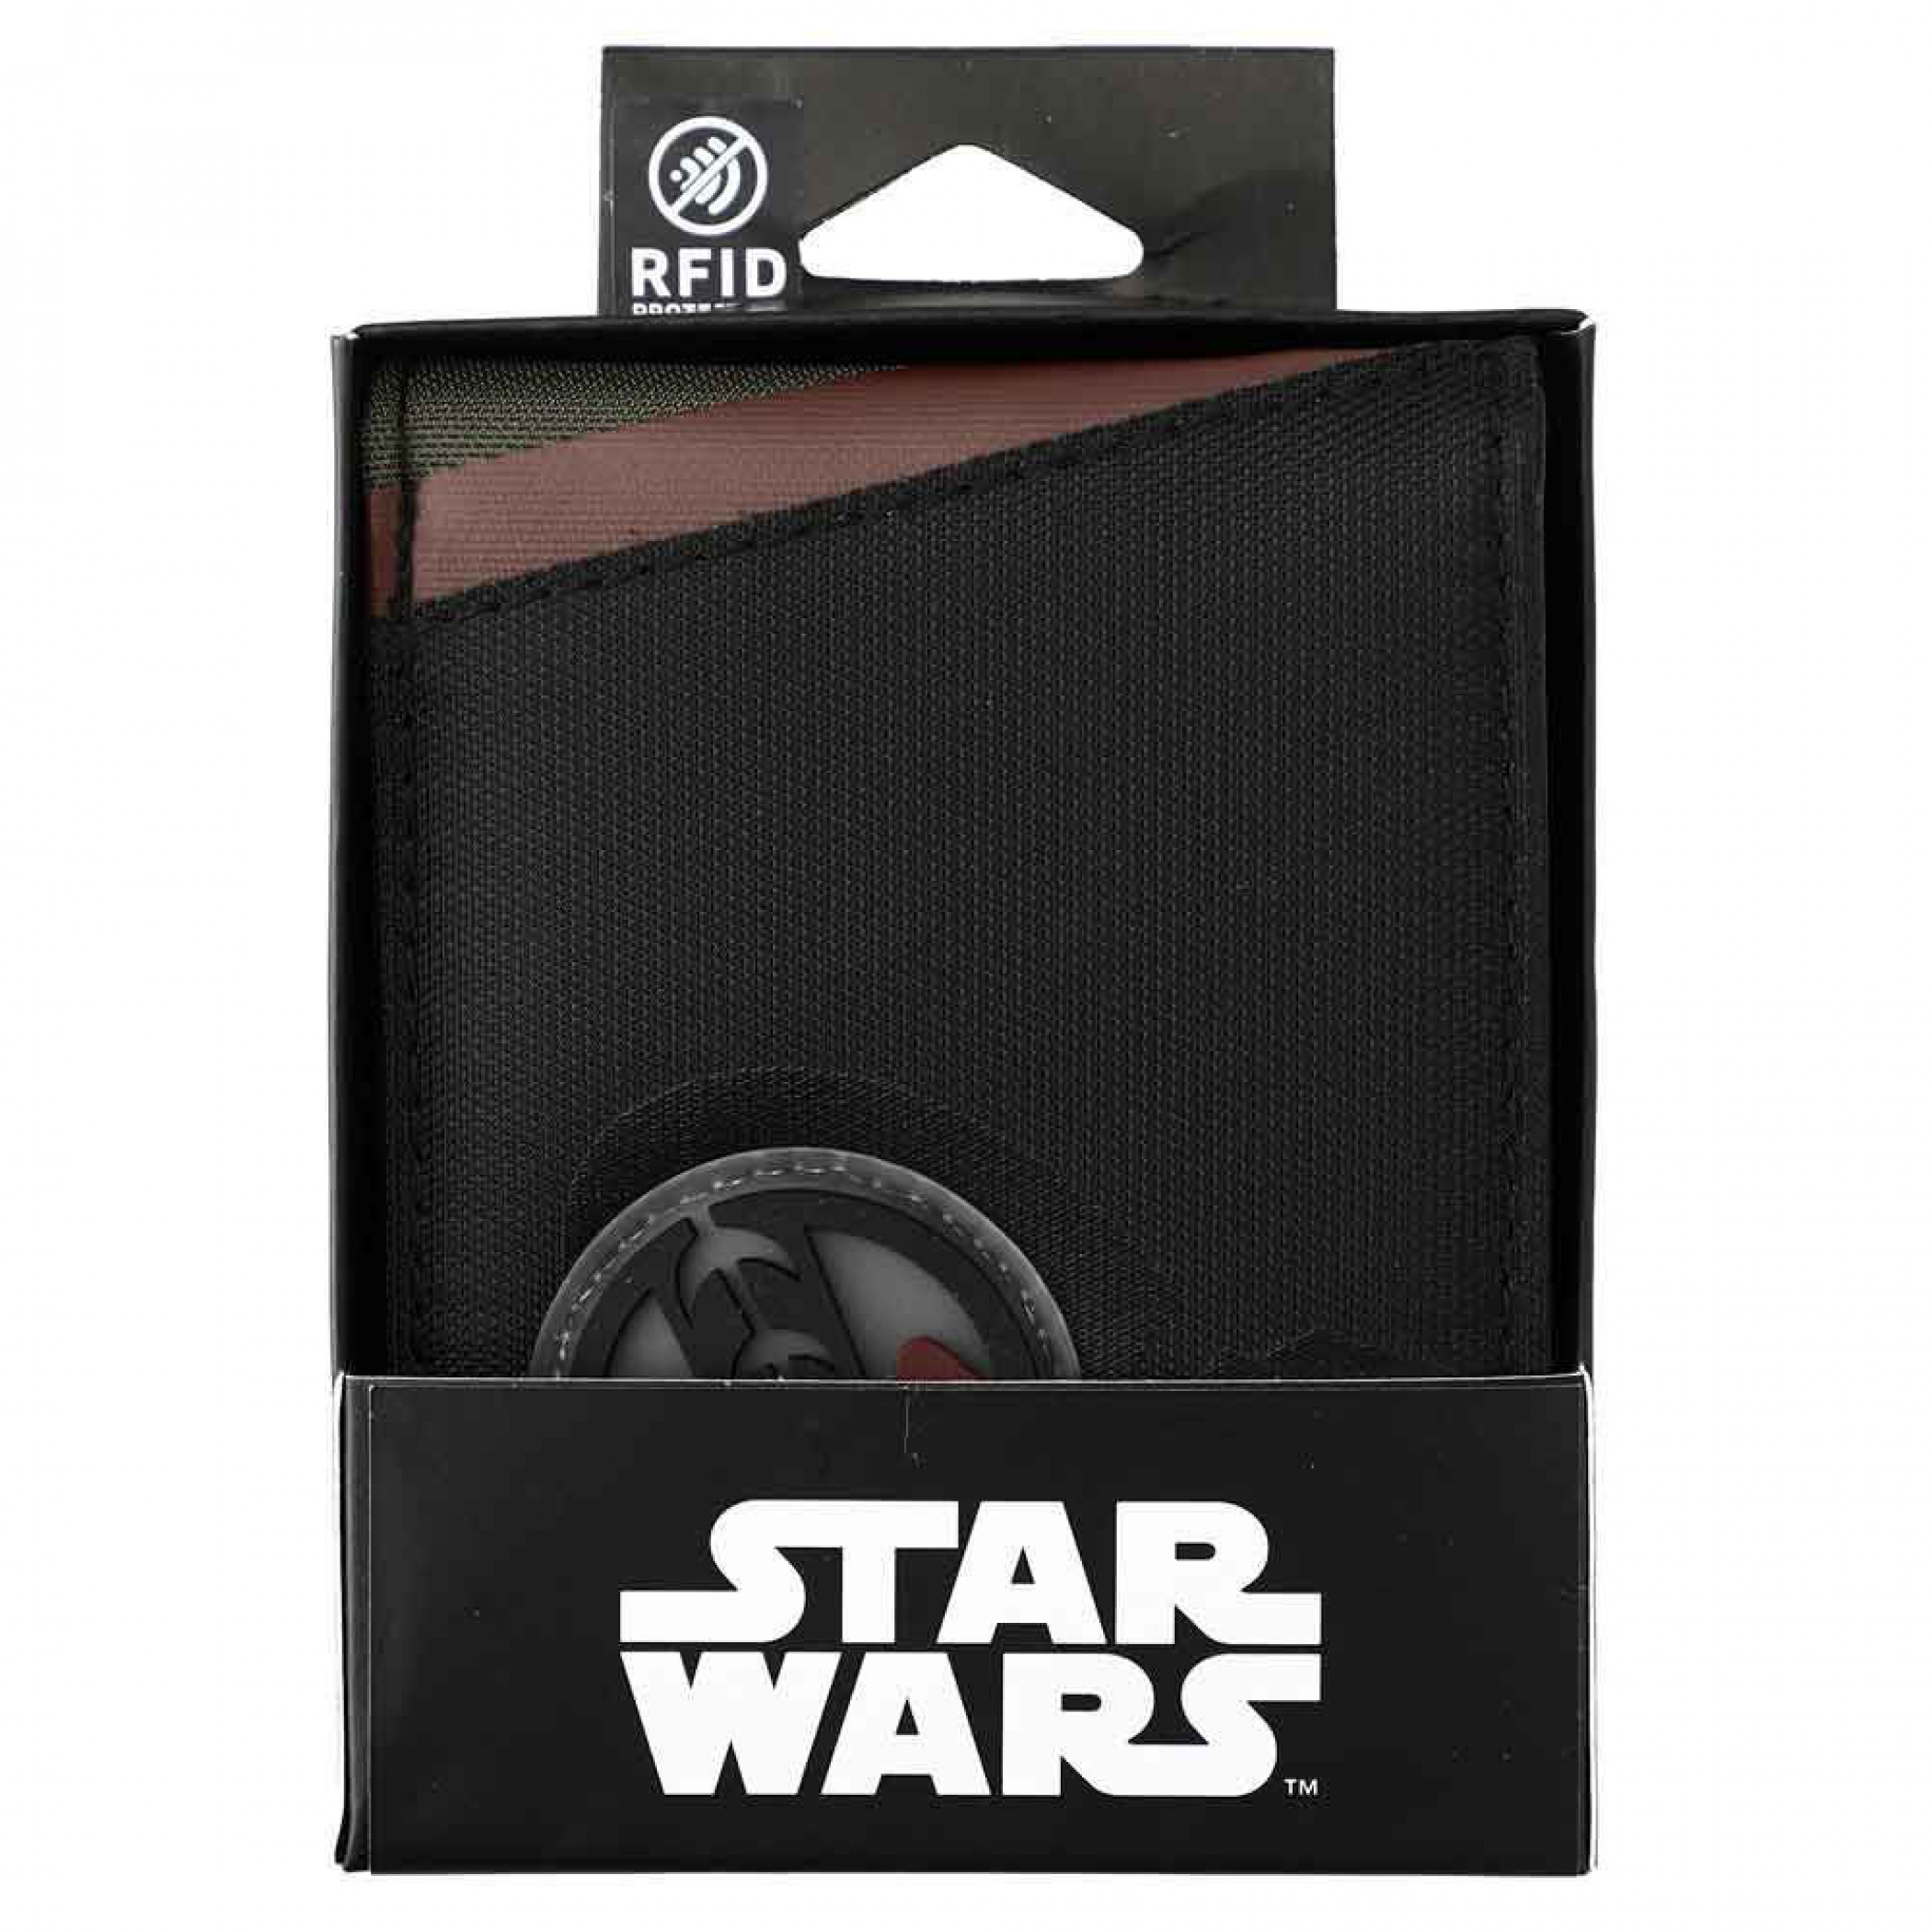 Star Wars Boba Fett Patch Bi-fold Wallet